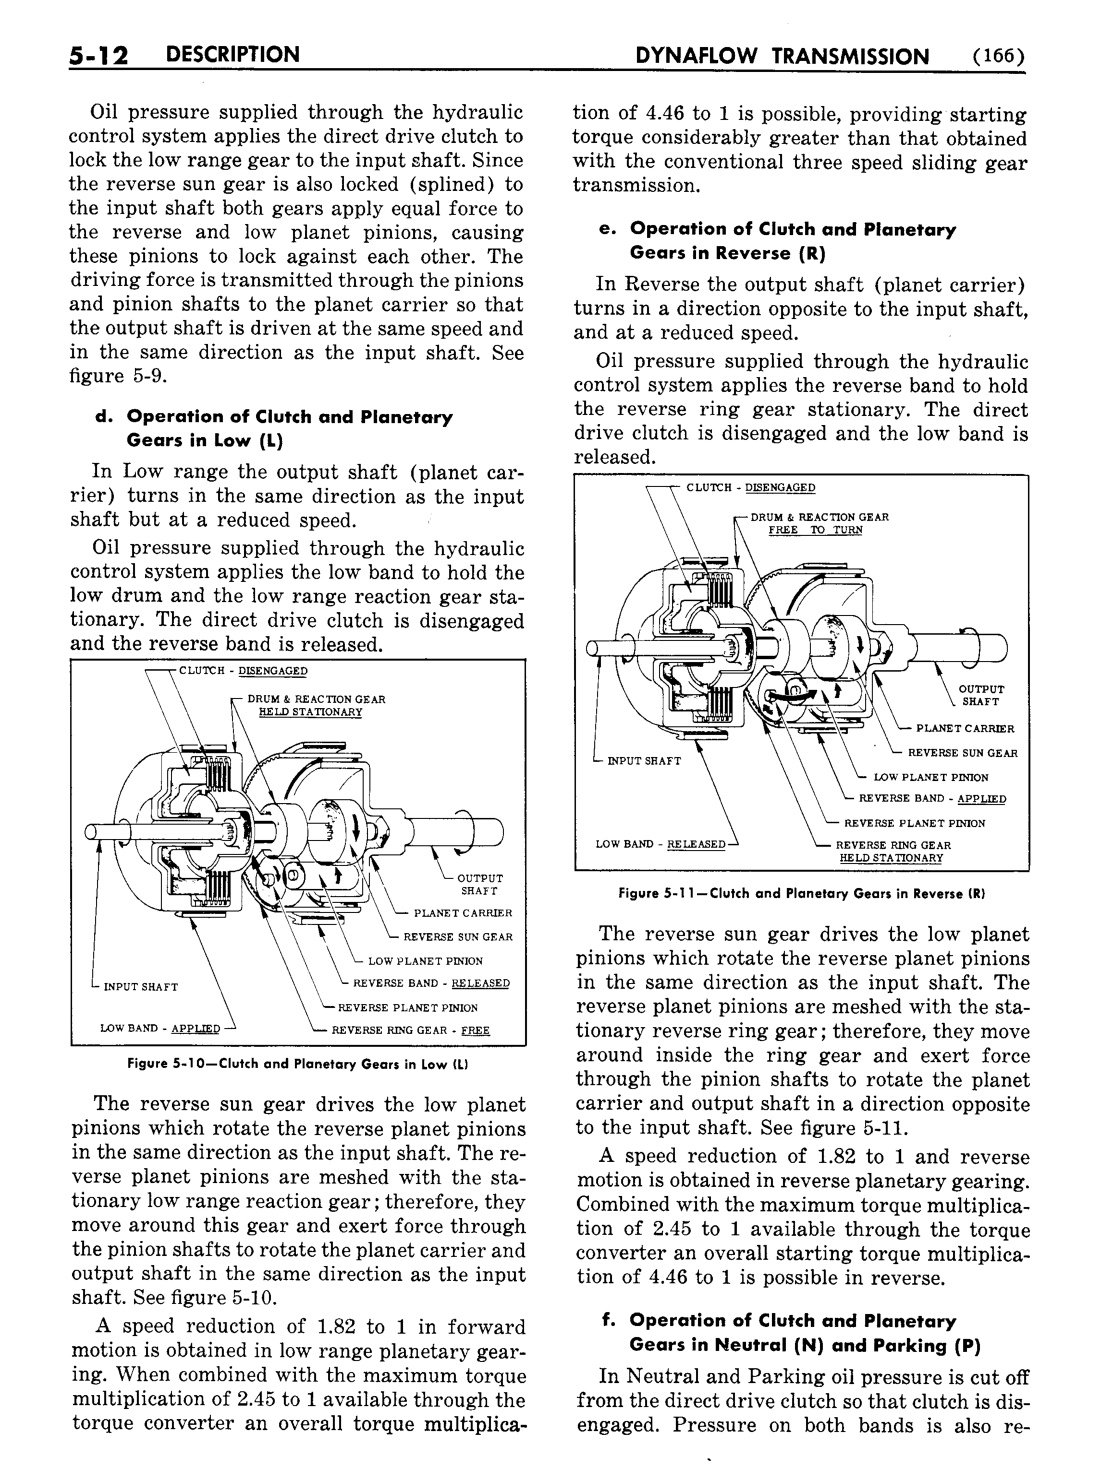 n_06 1954 Buick Shop Manual - Dynaflow-012-012.jpg